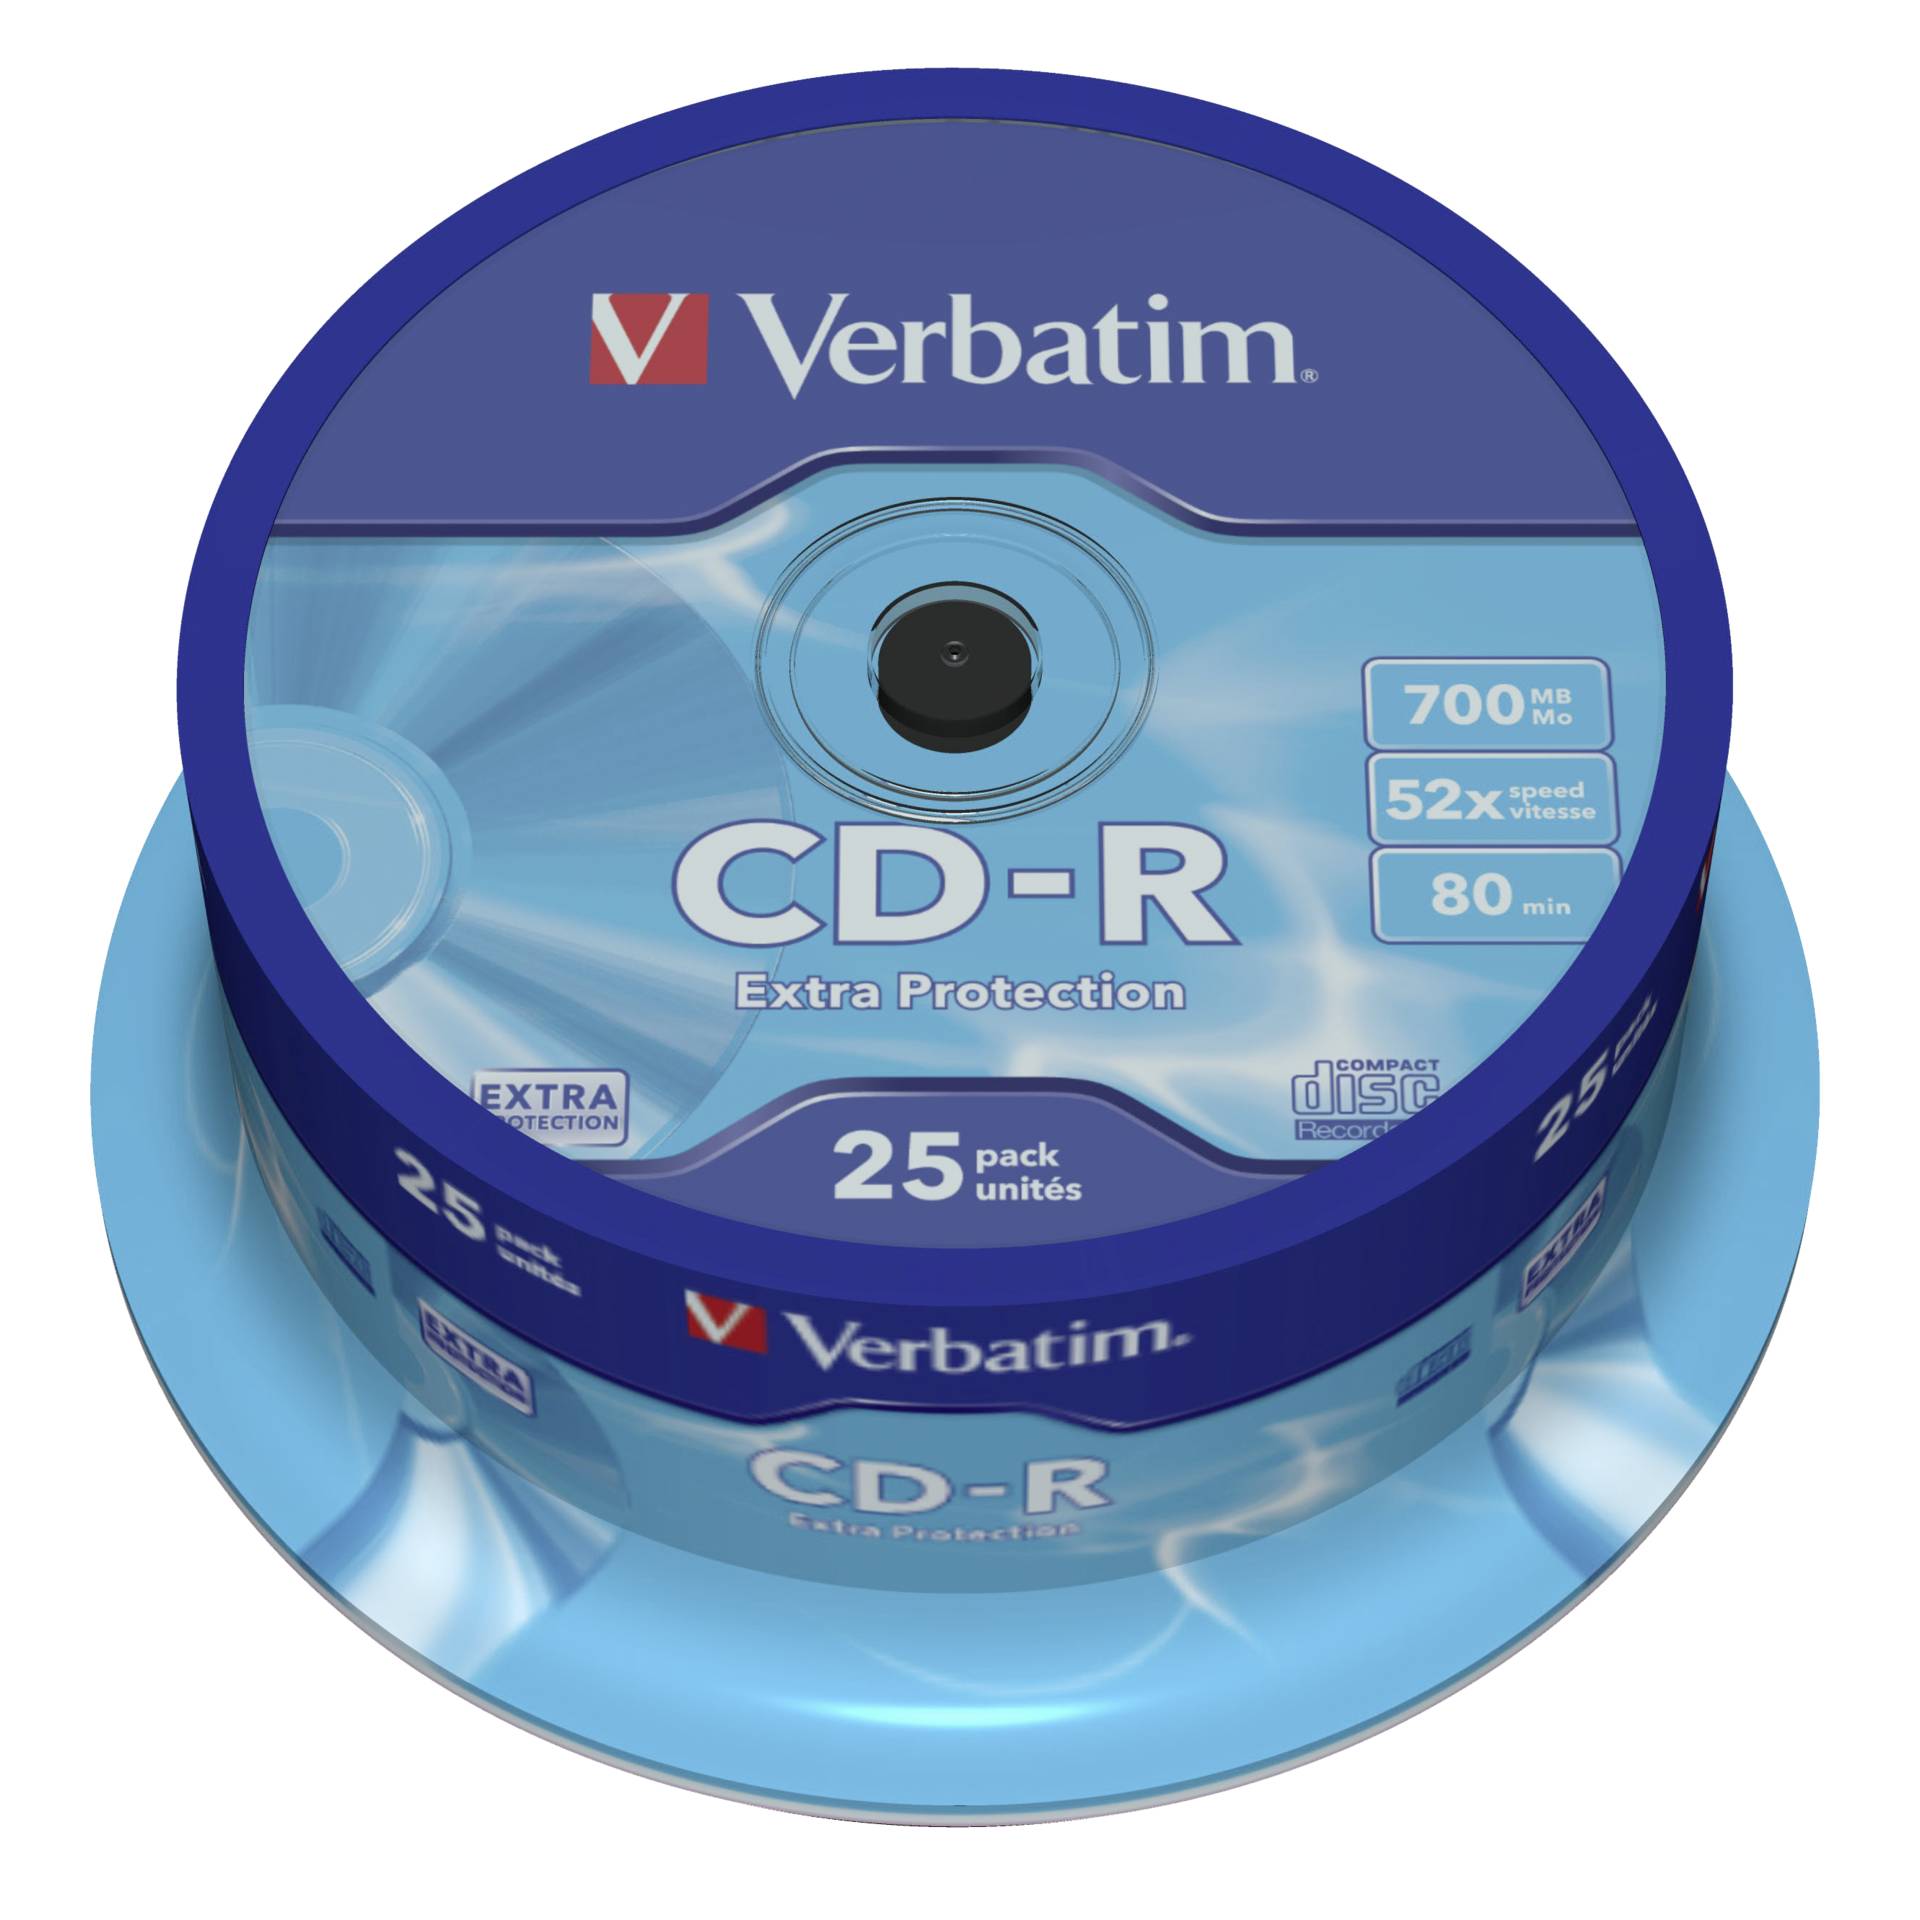 Verbatim CD-R 700MB 52x, 25er Spindel Extra Protection 